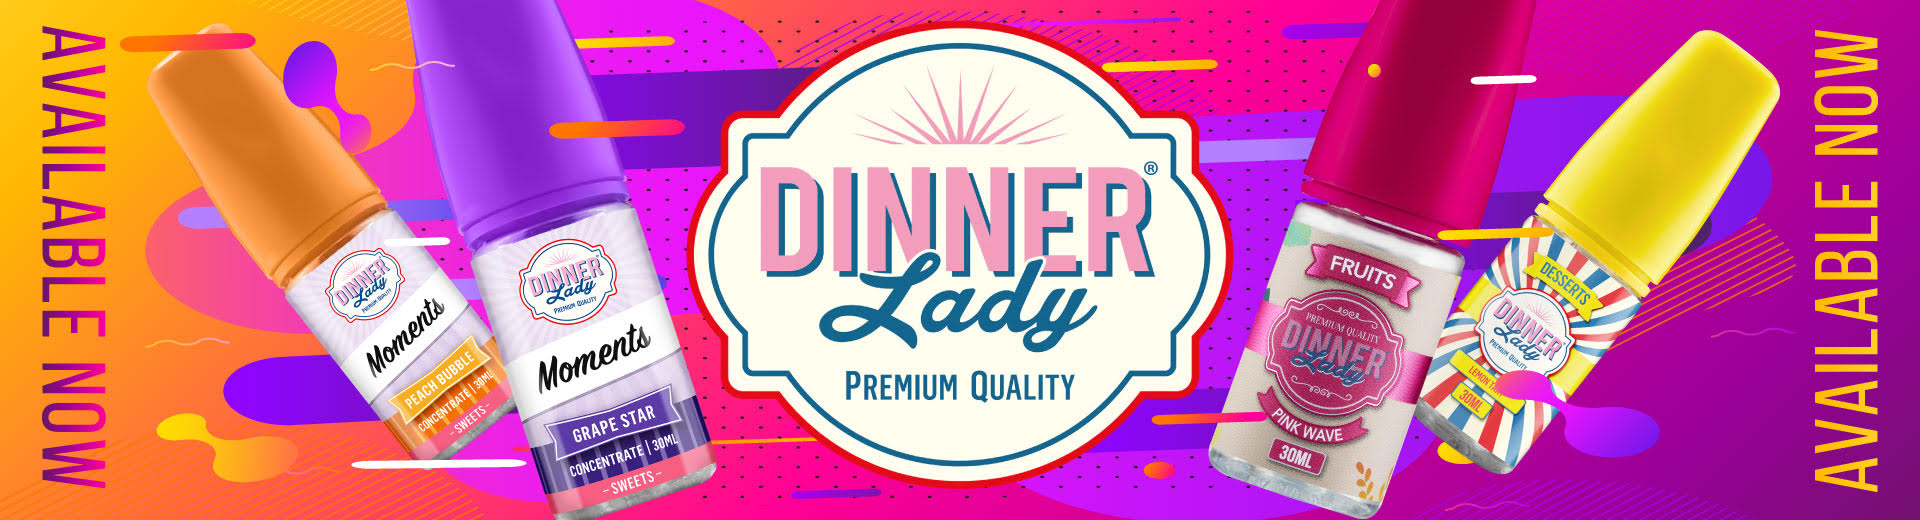 Dinner Lady 2